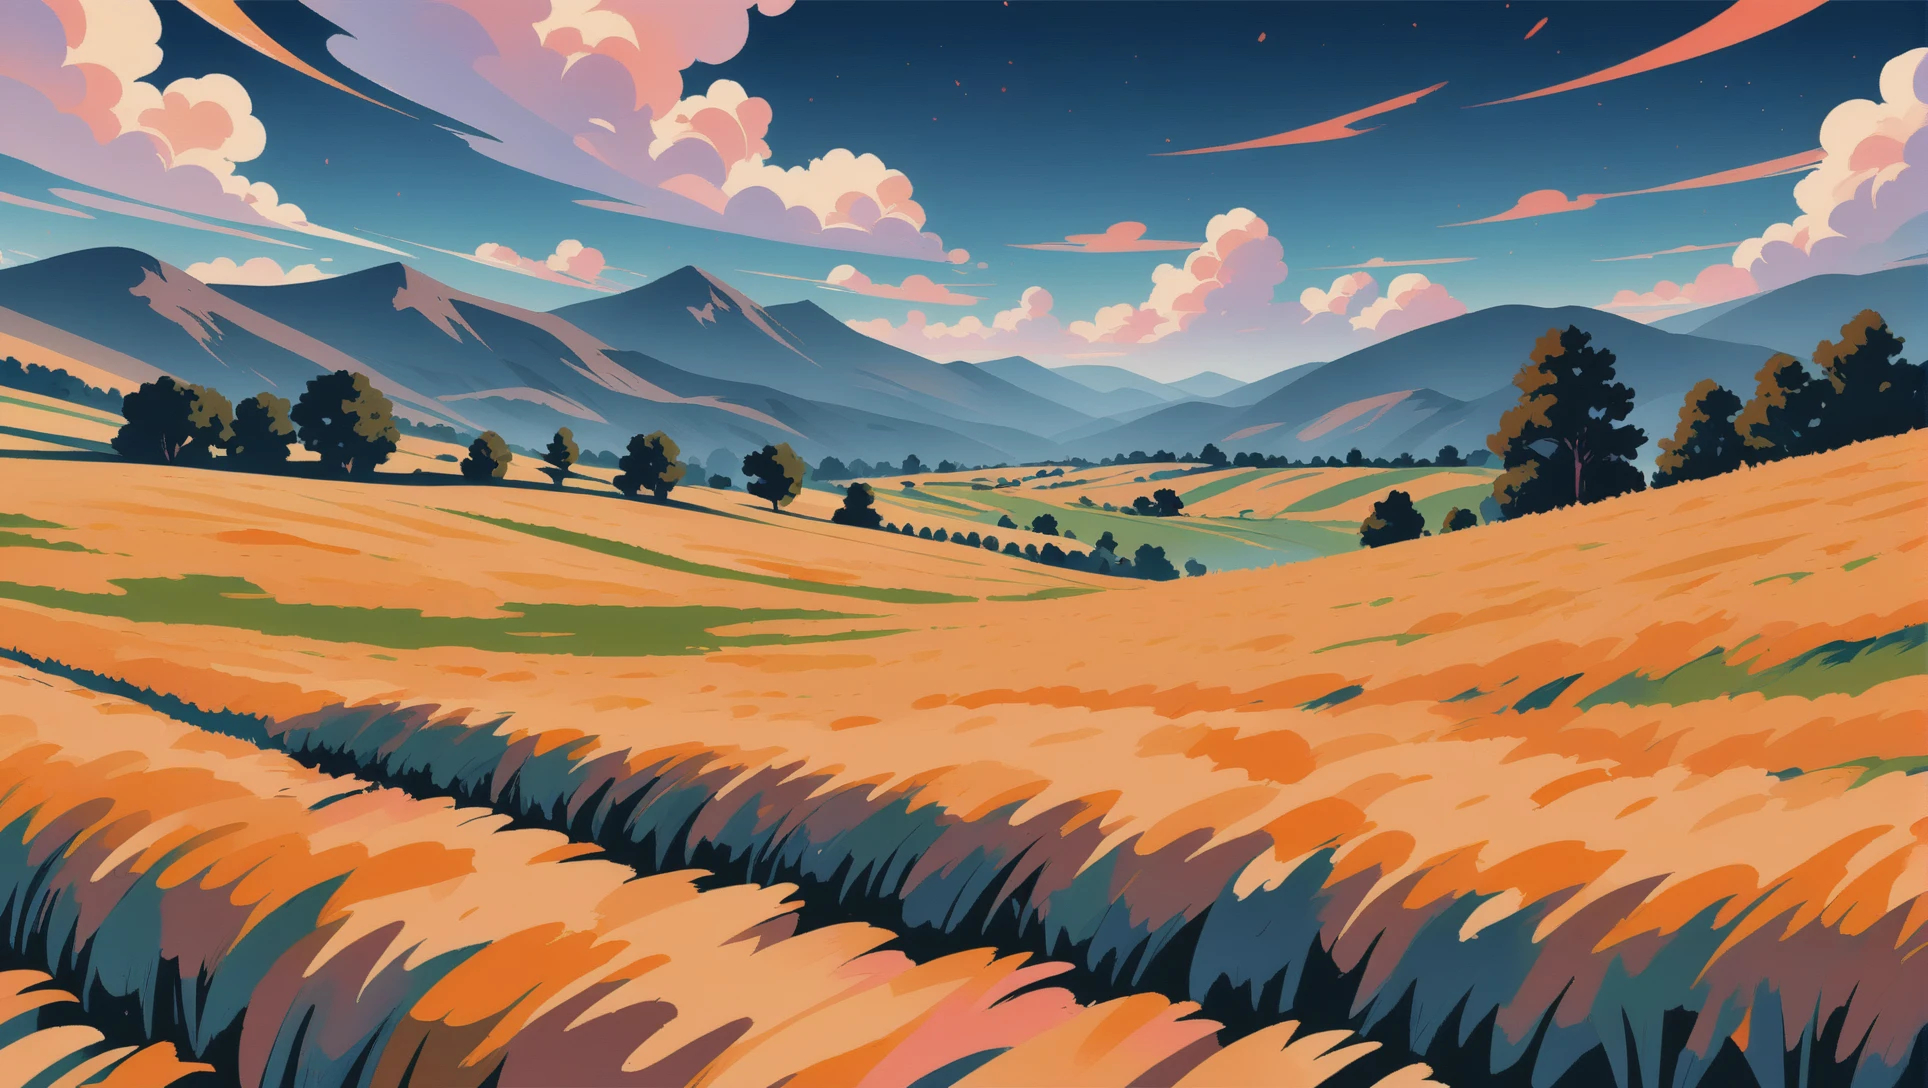 peinture mate de style anime, un champ de blé parmi les collines